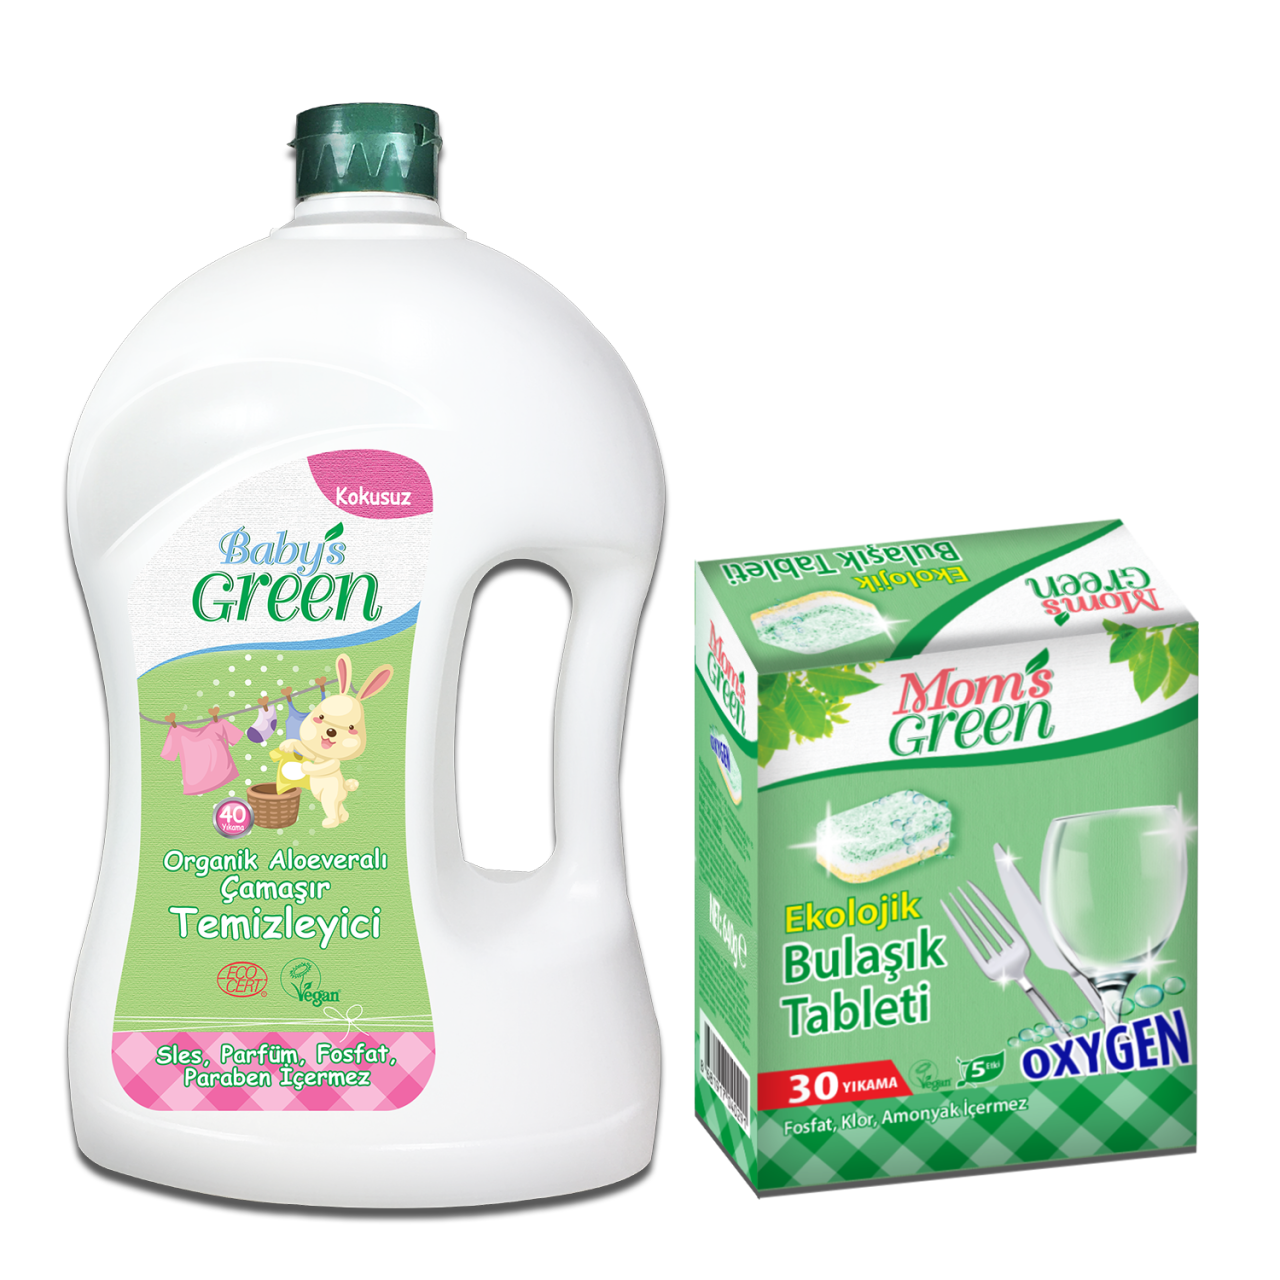 2'li Set Organik Aloe Veralı Bebek Çamaşır Temizleyici  ECO 40 Yıkama  + Ekolojik Bulaşık Tableti